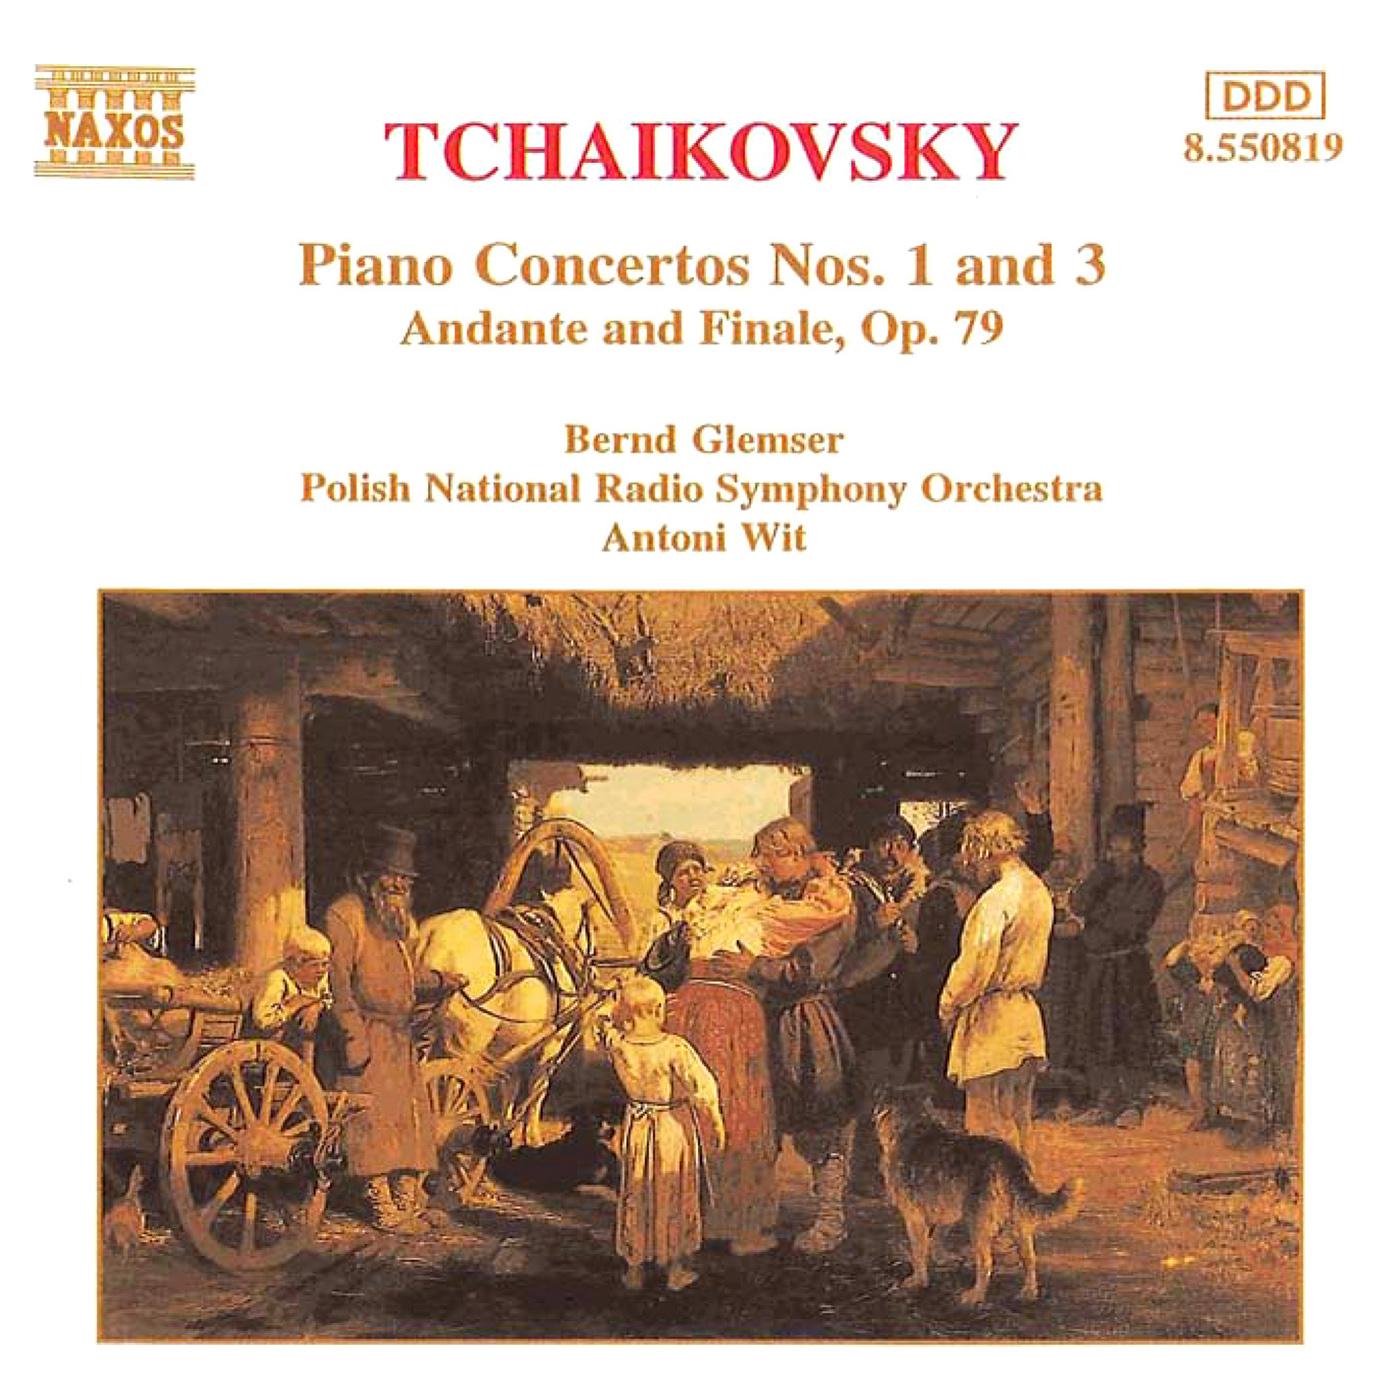 Piano Concerto No. 1 in B-Flat Minor, Op. 23:I. Allegro non troppo e molto maestoso - Allegro con spirito